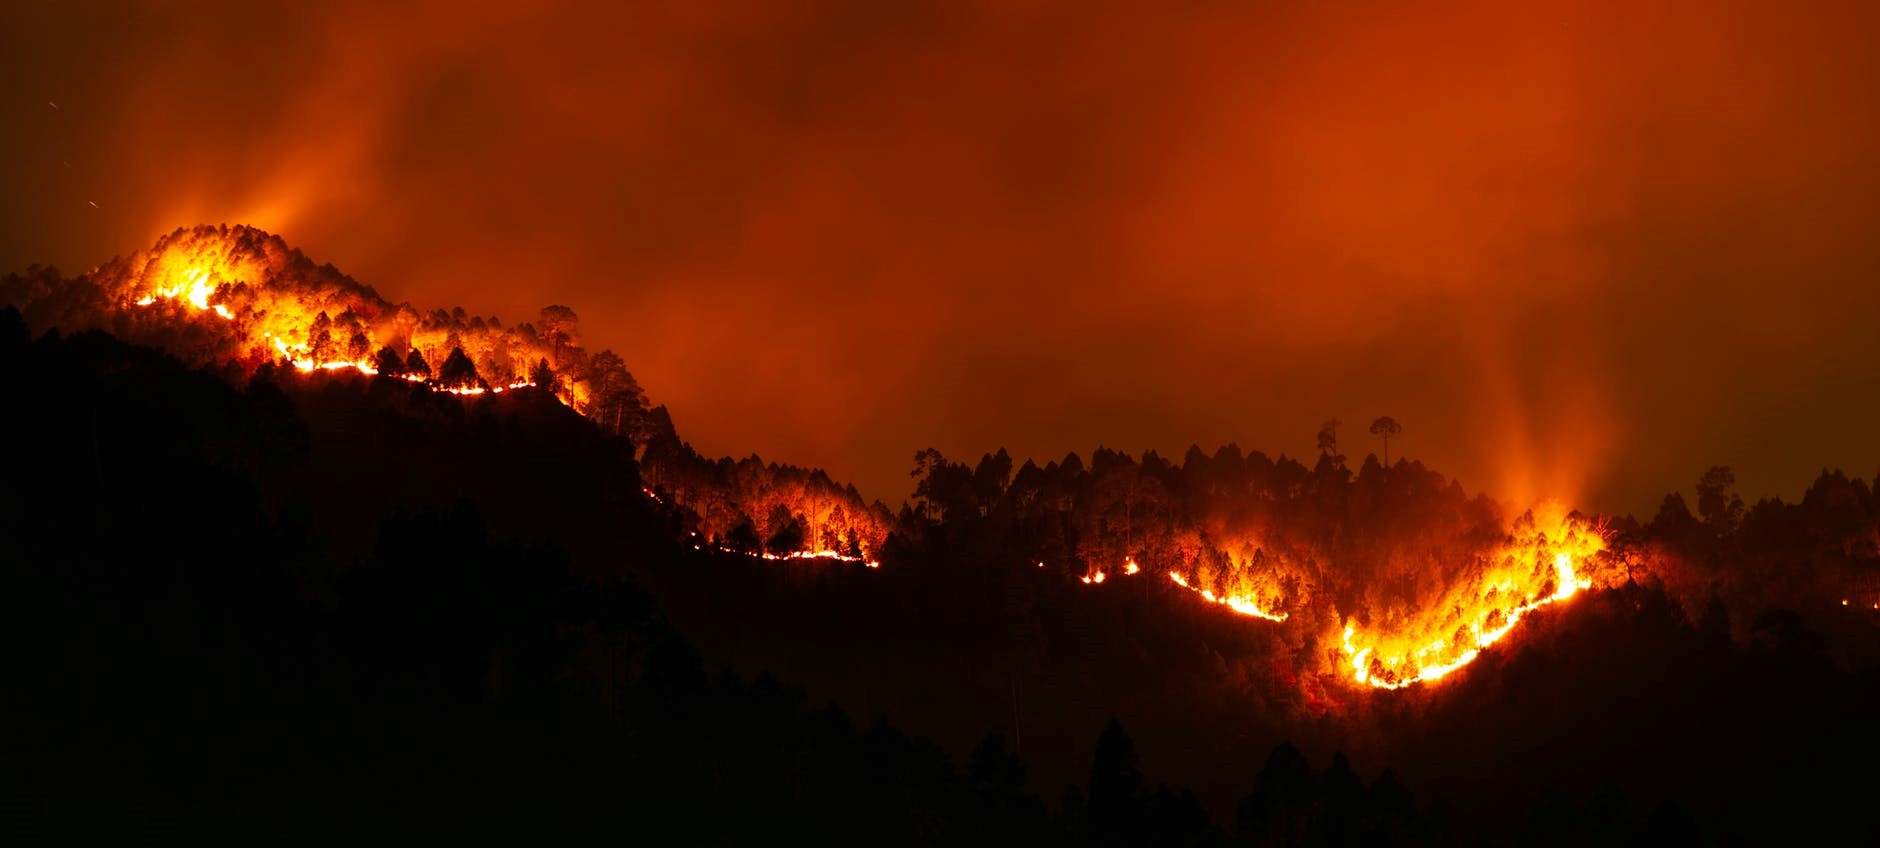 Scène d'un grand incendie de forêt de nuit